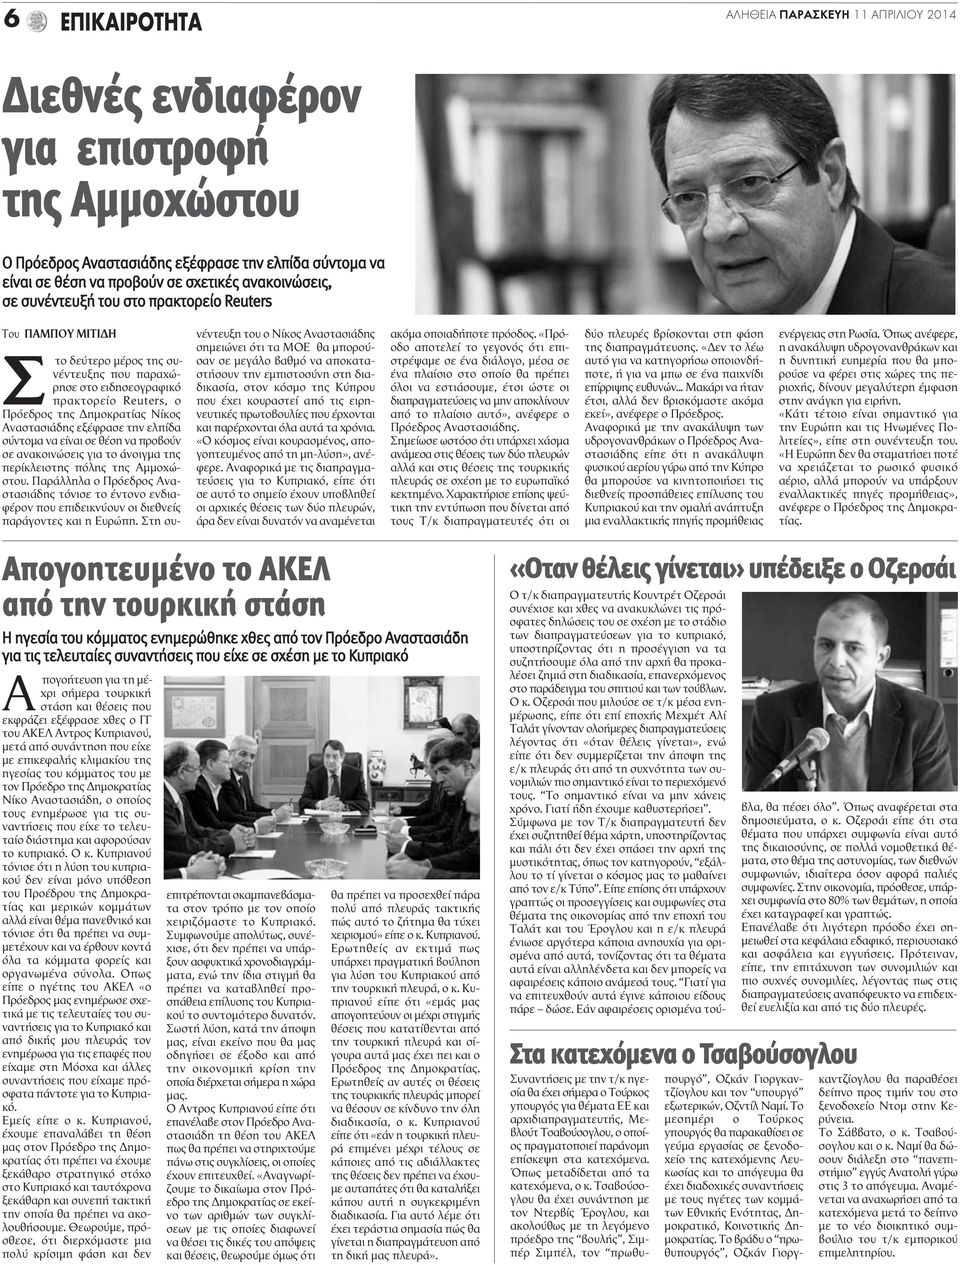 Αναστασιάδης εξέφρασε την ελπίδα σύντομα να είναι σε θέση να προβούν σε ανακοινώσεις για το άνοιγμα της περίκλειστης πόλης της Αμμοχώστου.